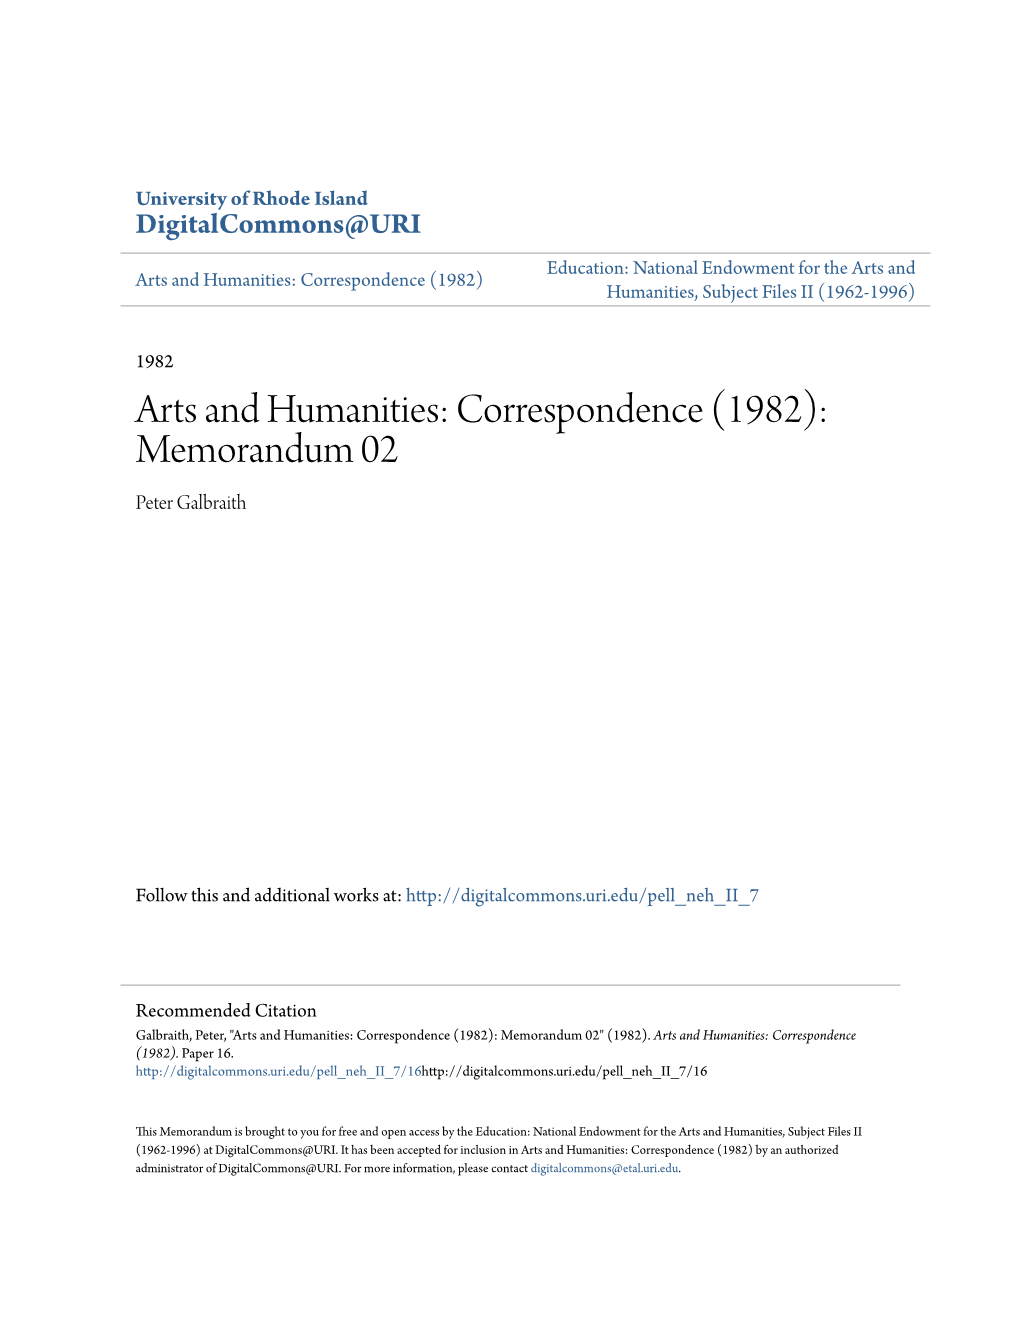 Arts and Humanities: Correspondence (1982): Memorandum 02 Peter Galbraith